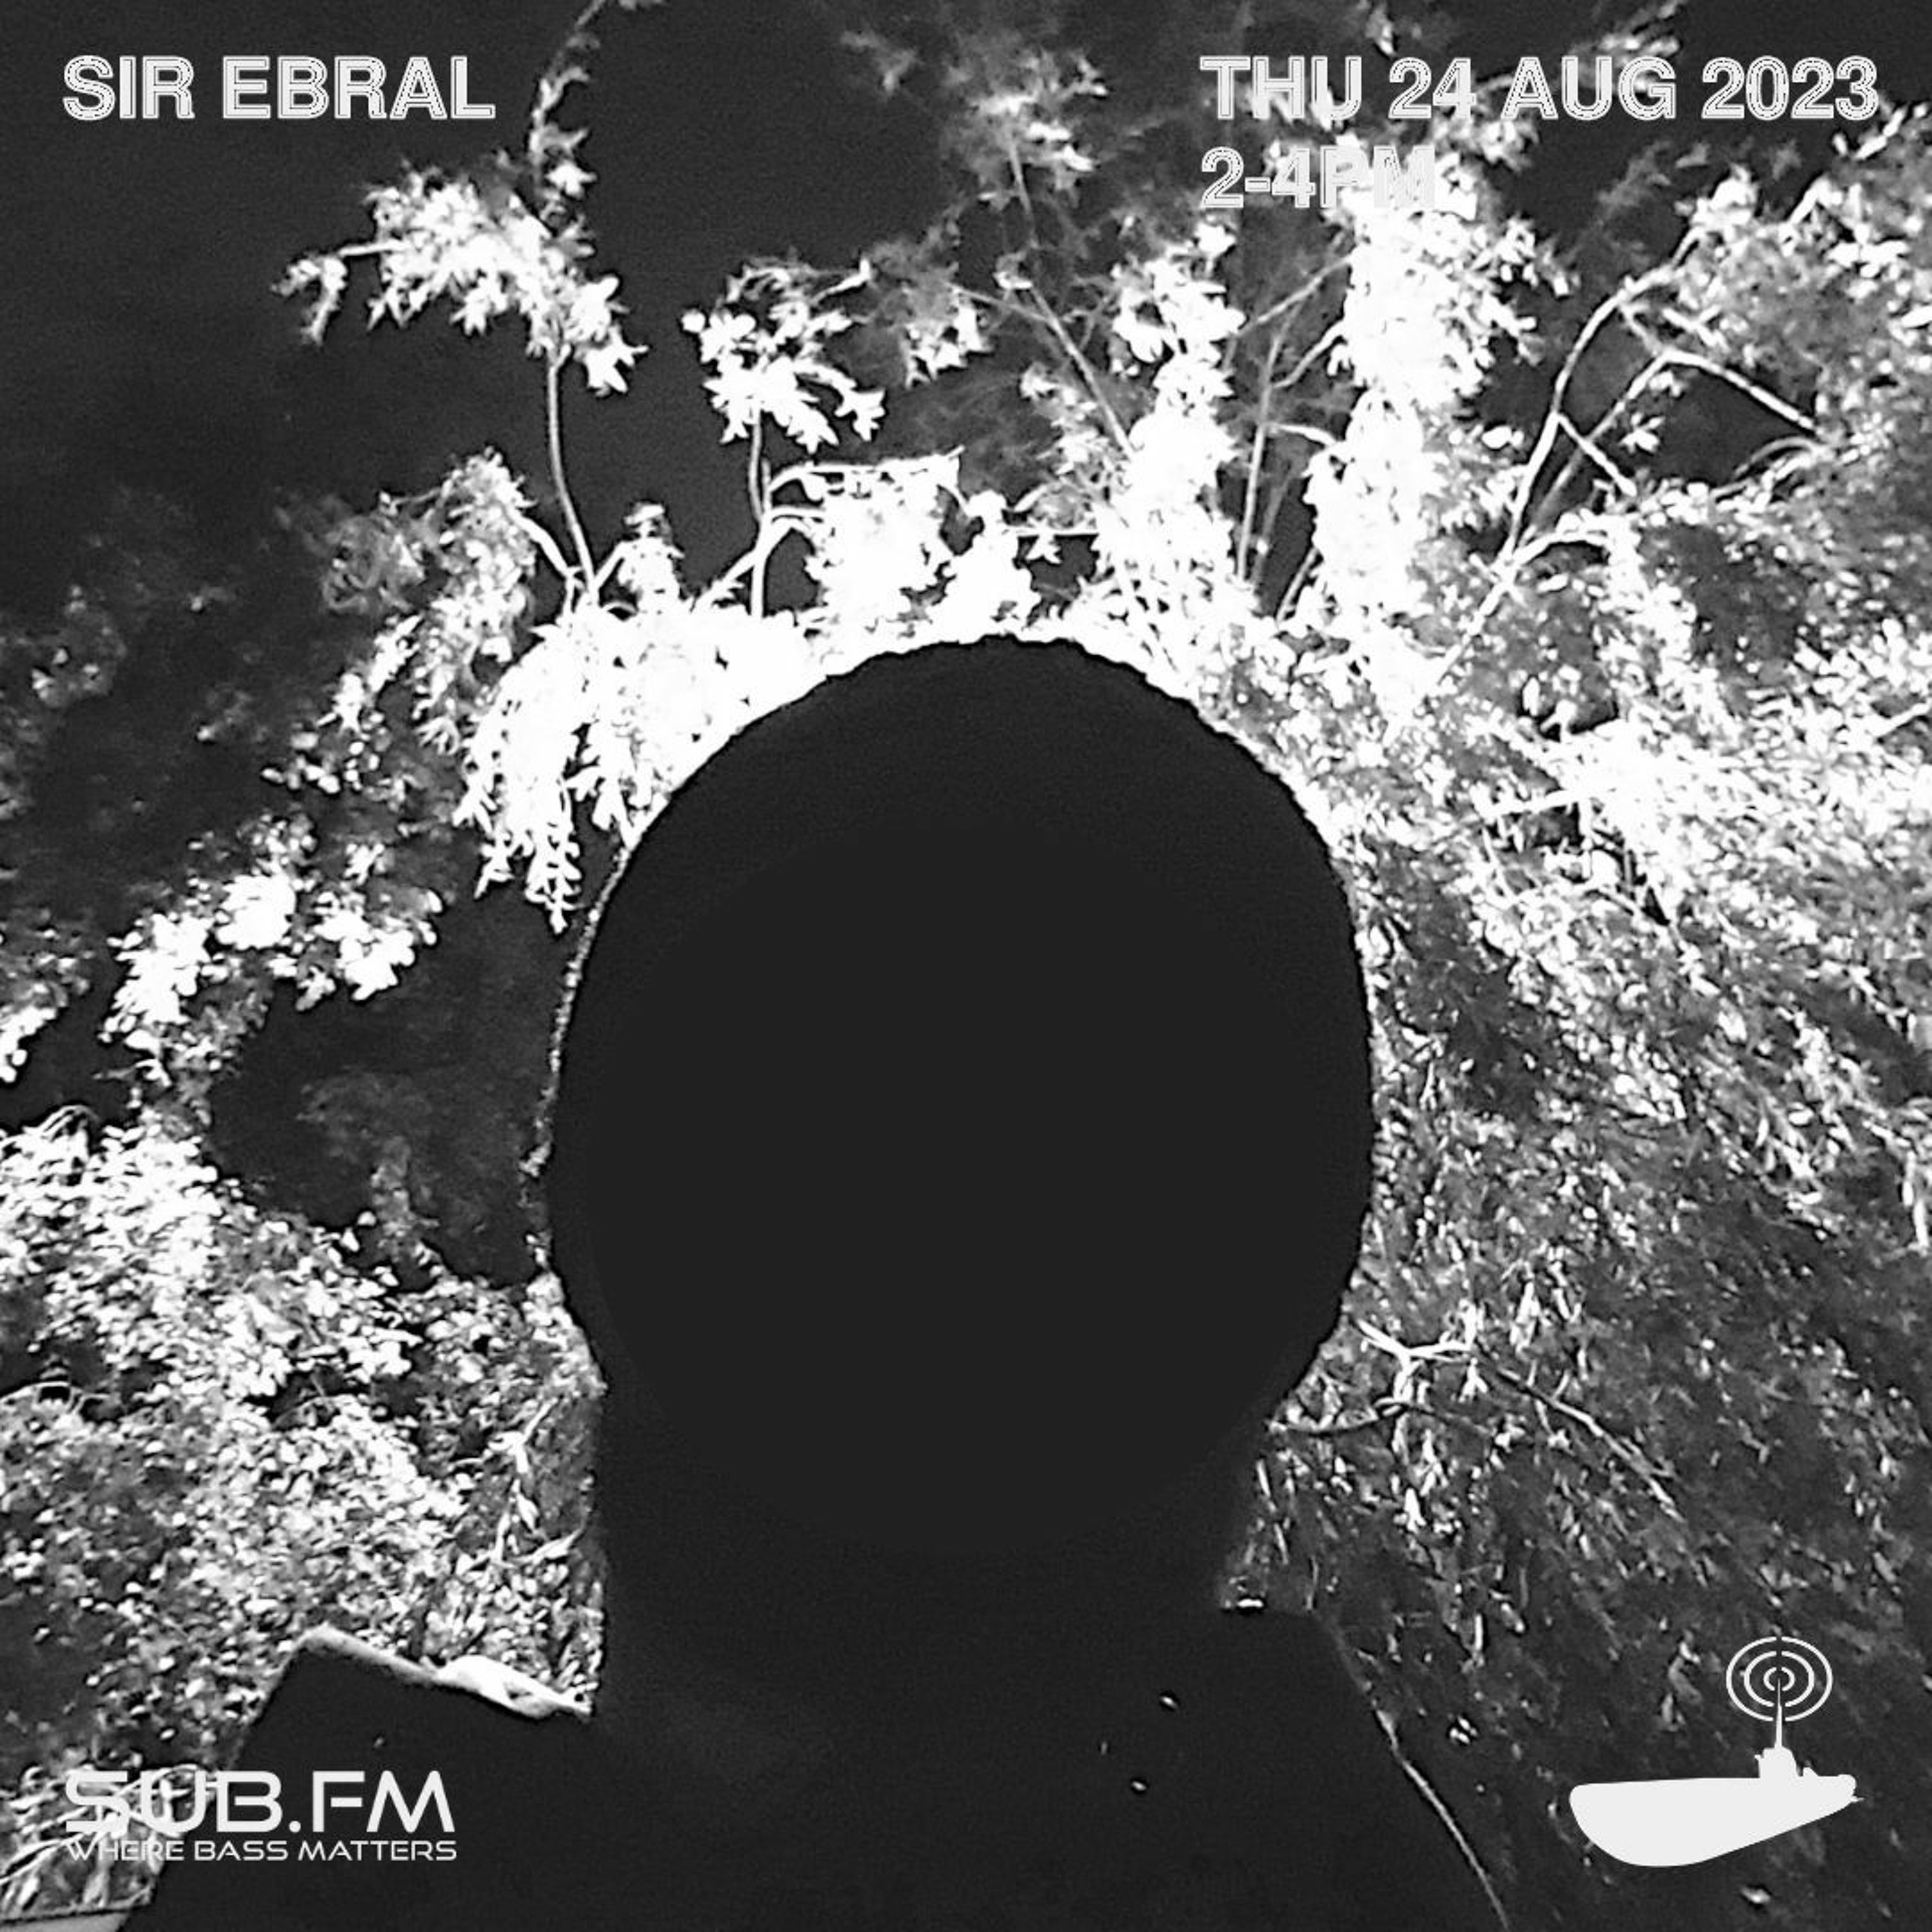 Sir Ebral - 24 Aug 2023